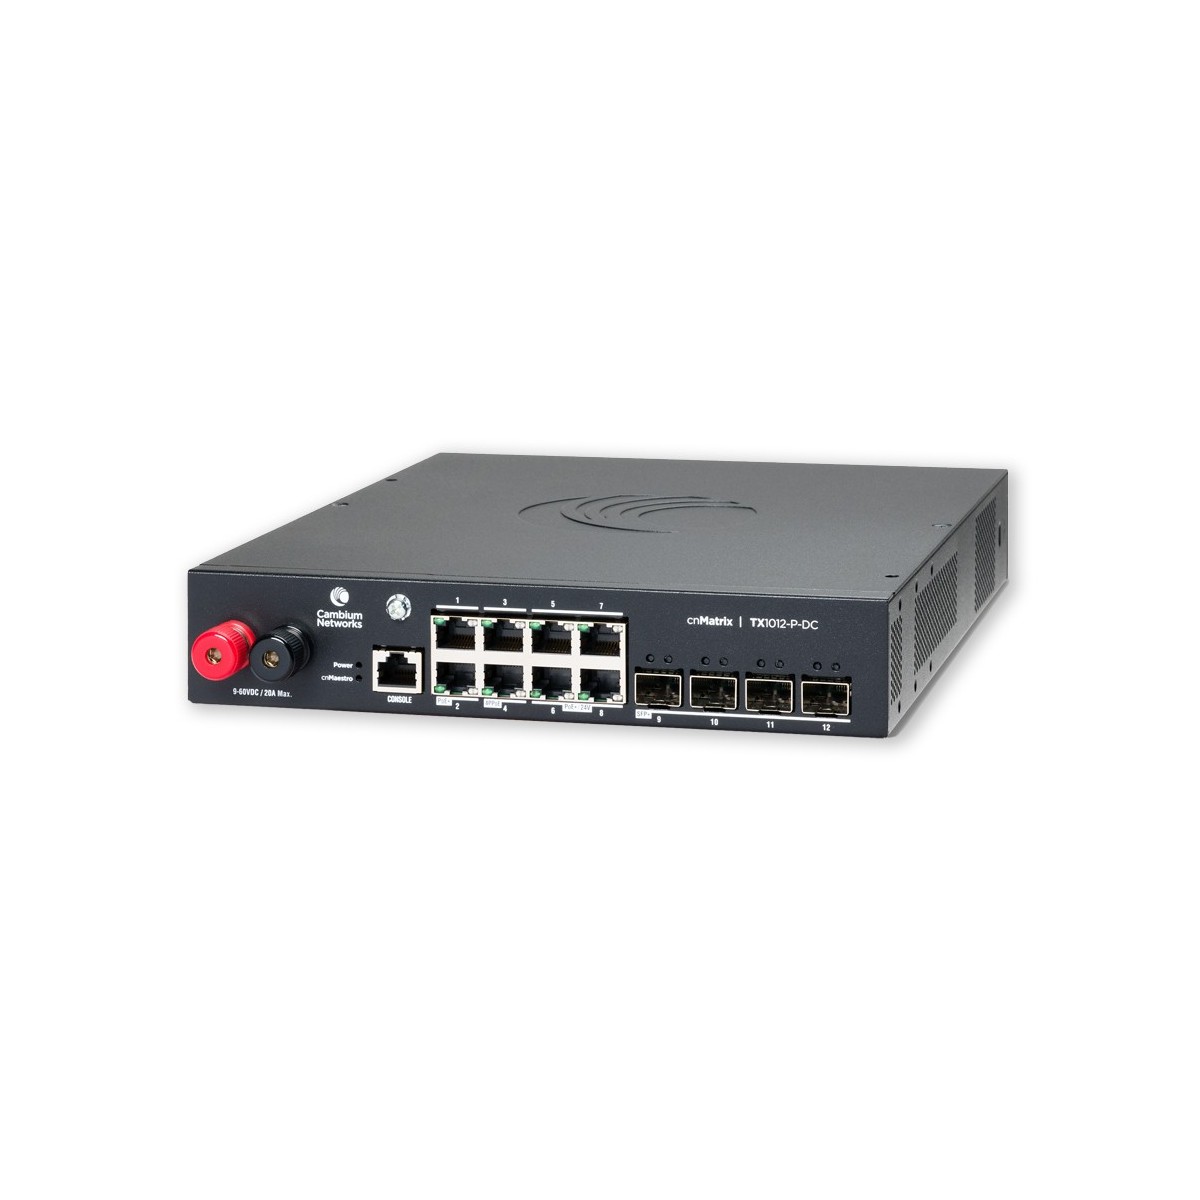 Cambium Networks cnMatrix TX 1012-P-DC - 170W POE Switch 8 x 1gbps  4 SFP+ - Switch - 1 Gbps